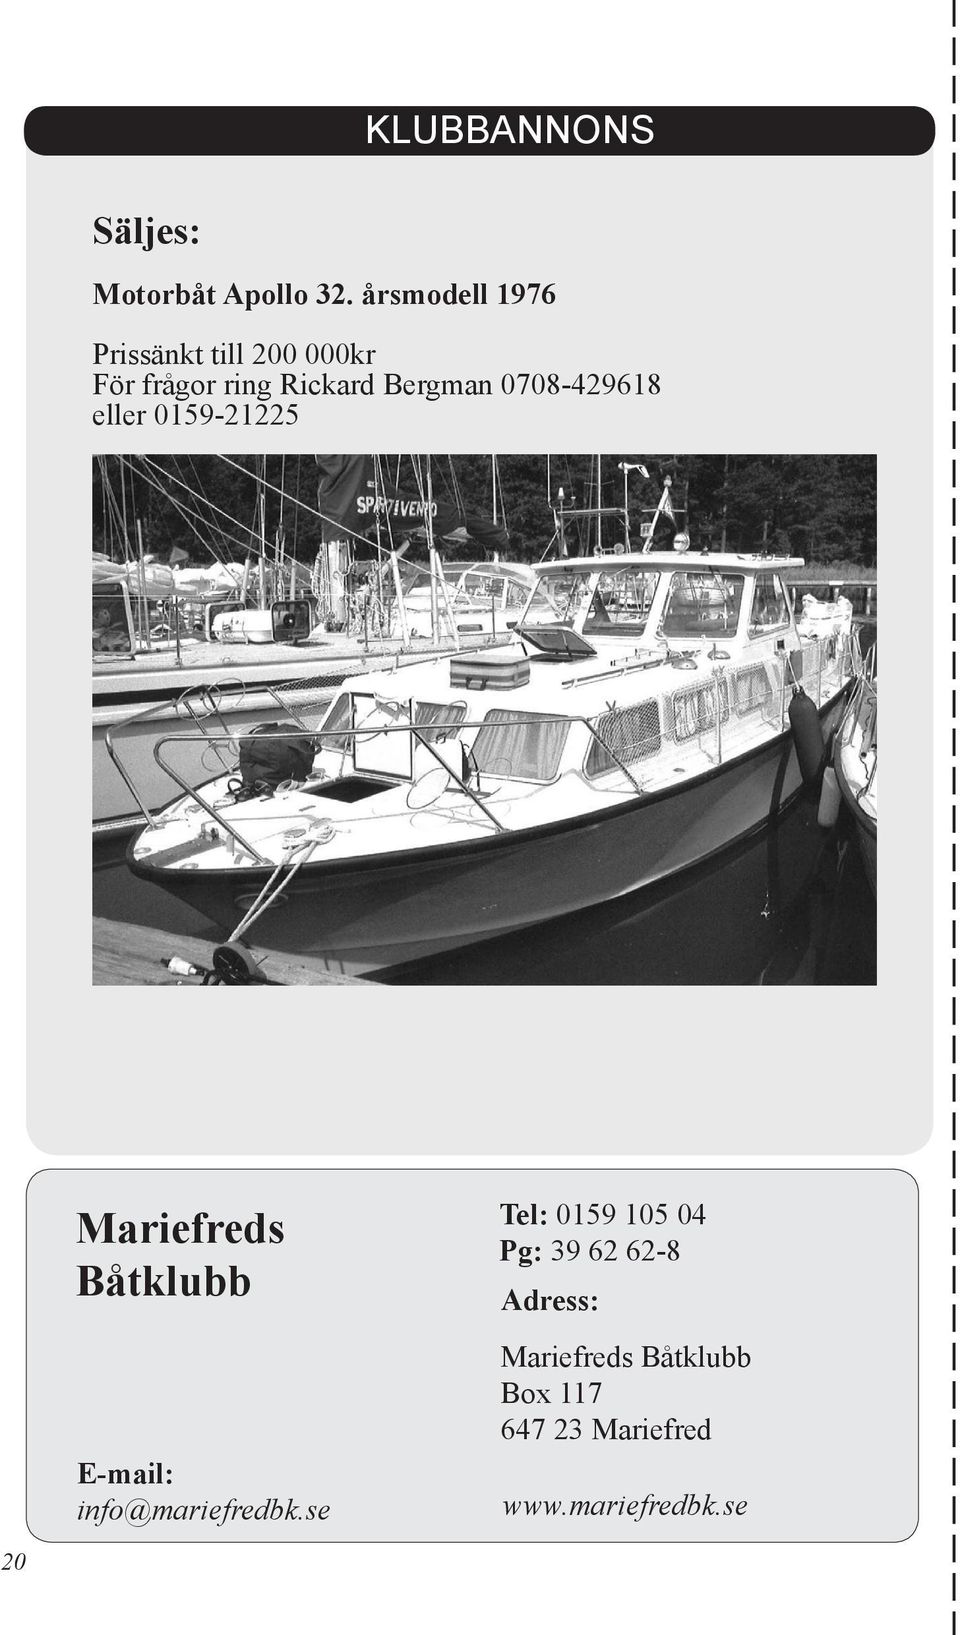 0708-429618 eller 0159-21225 20 Mariefreds Båtklubb E-mail: info@mariefredbk.